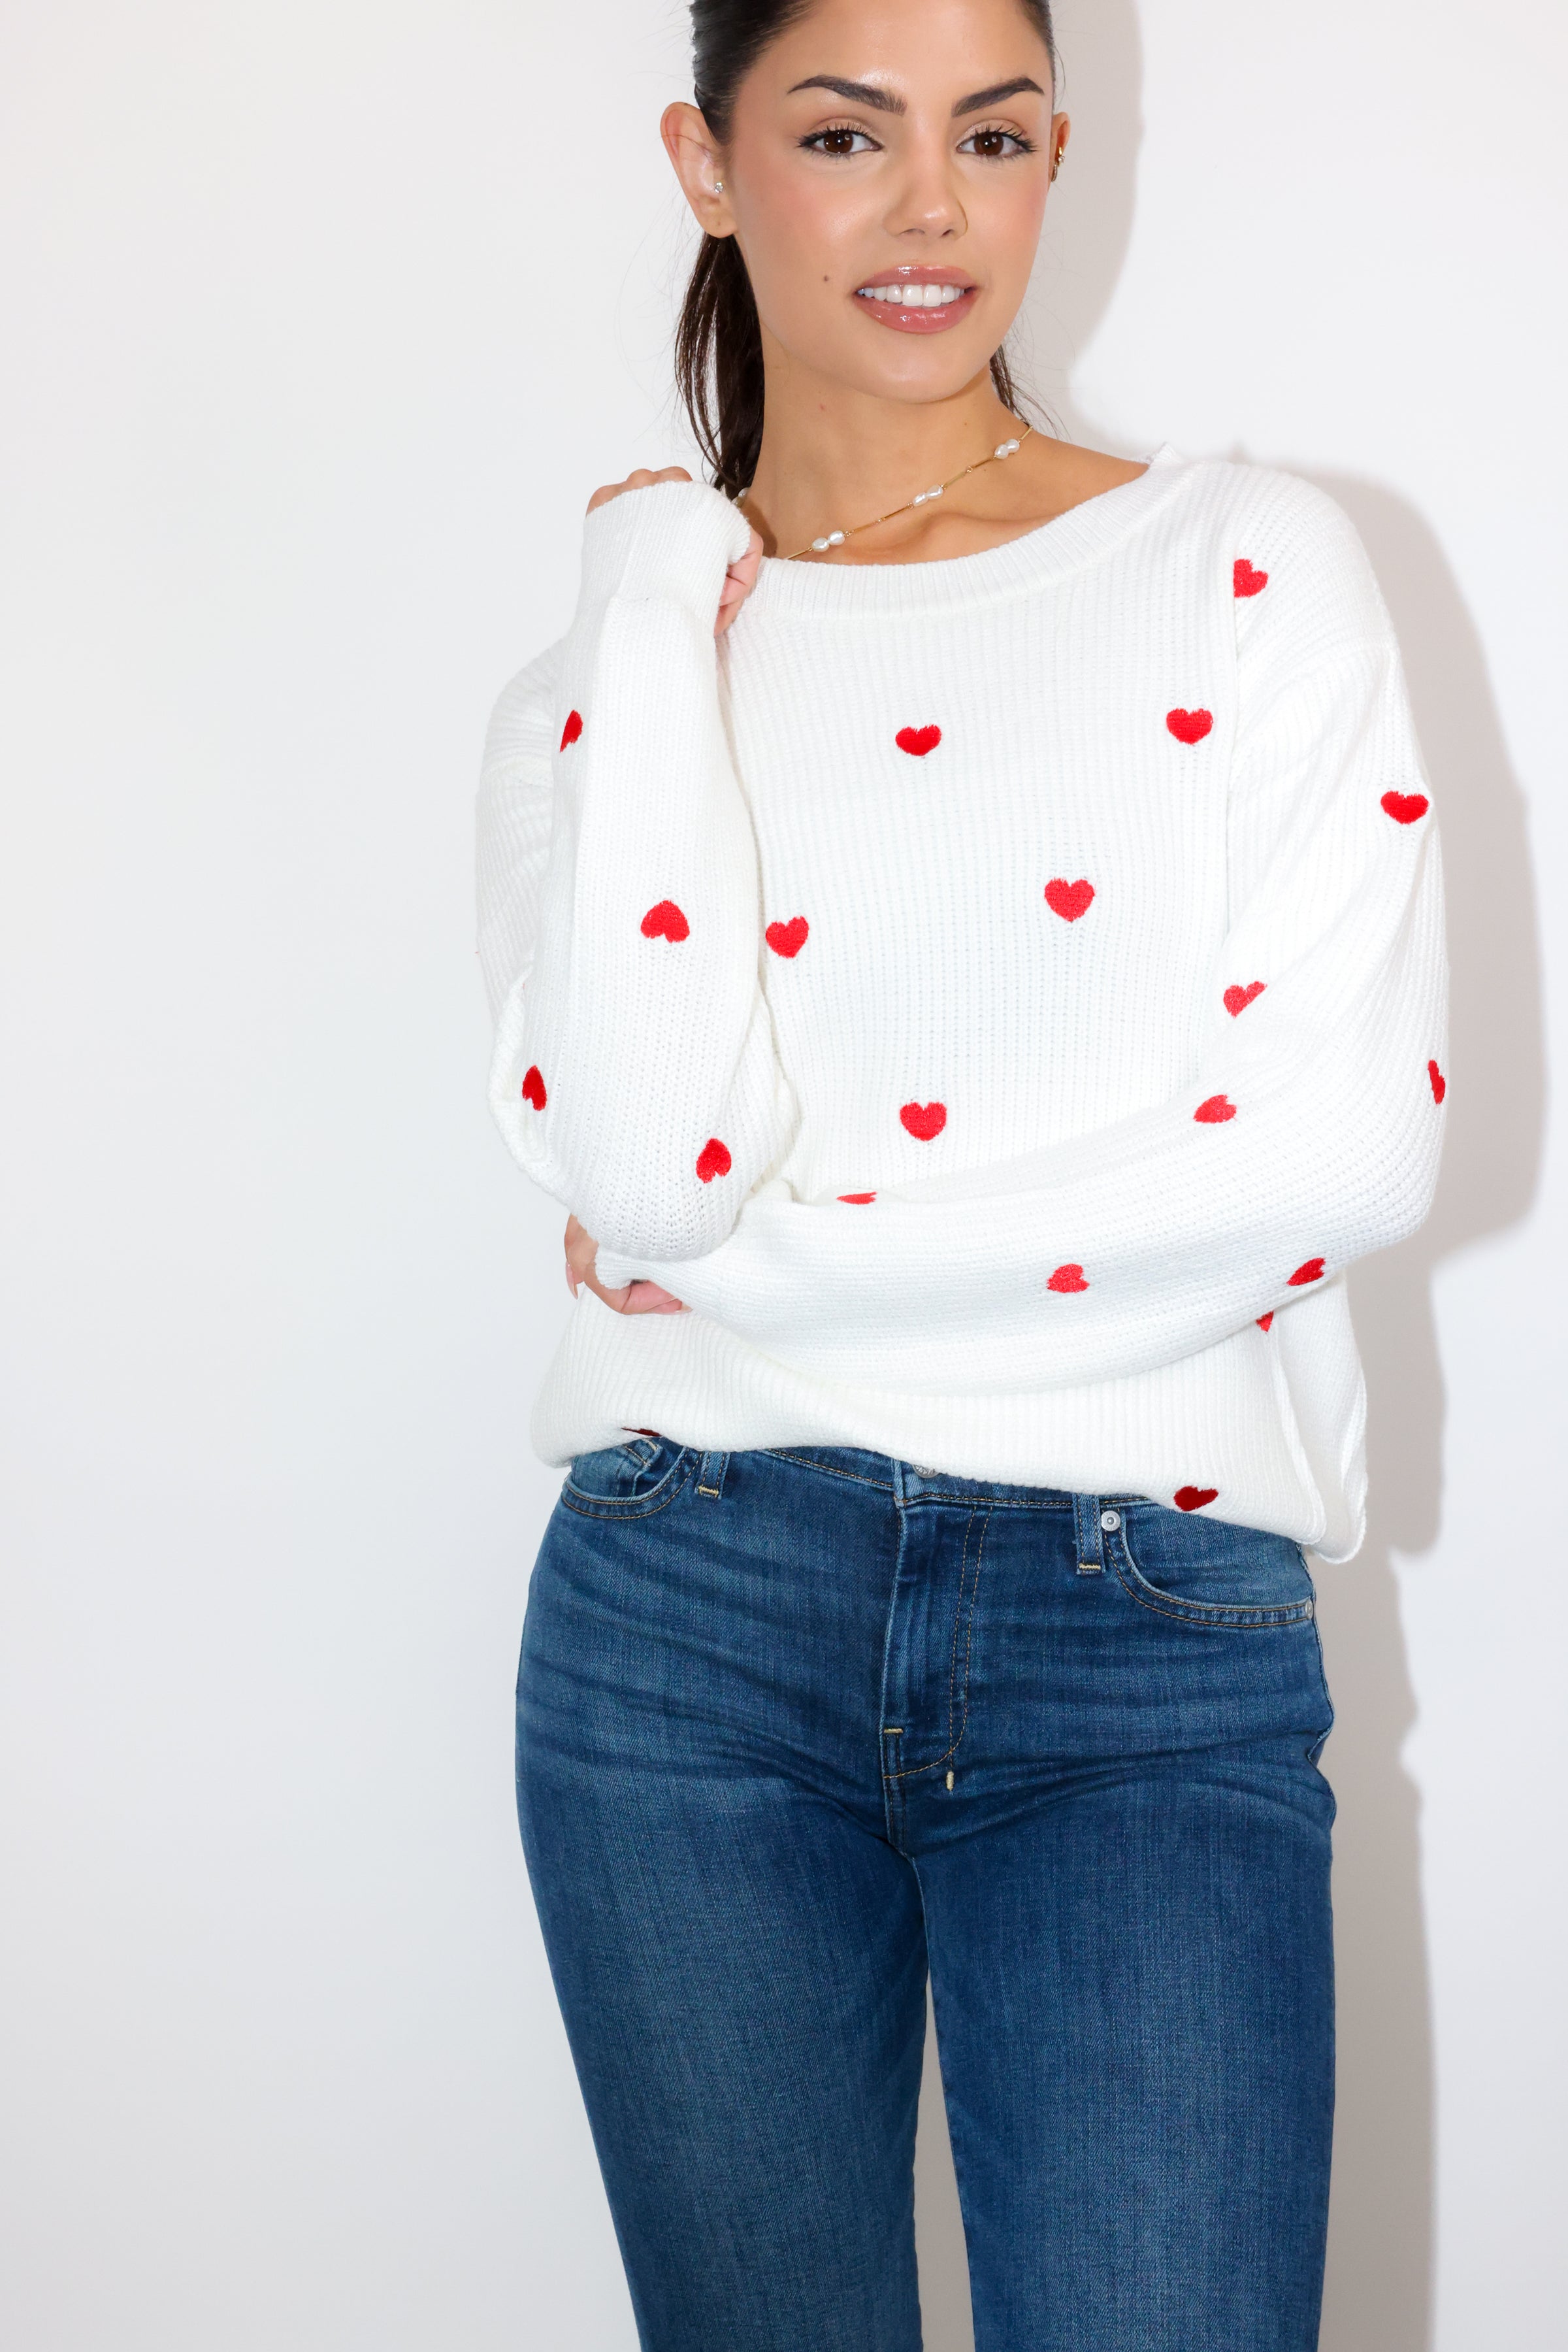 Heart Confetti Sweater